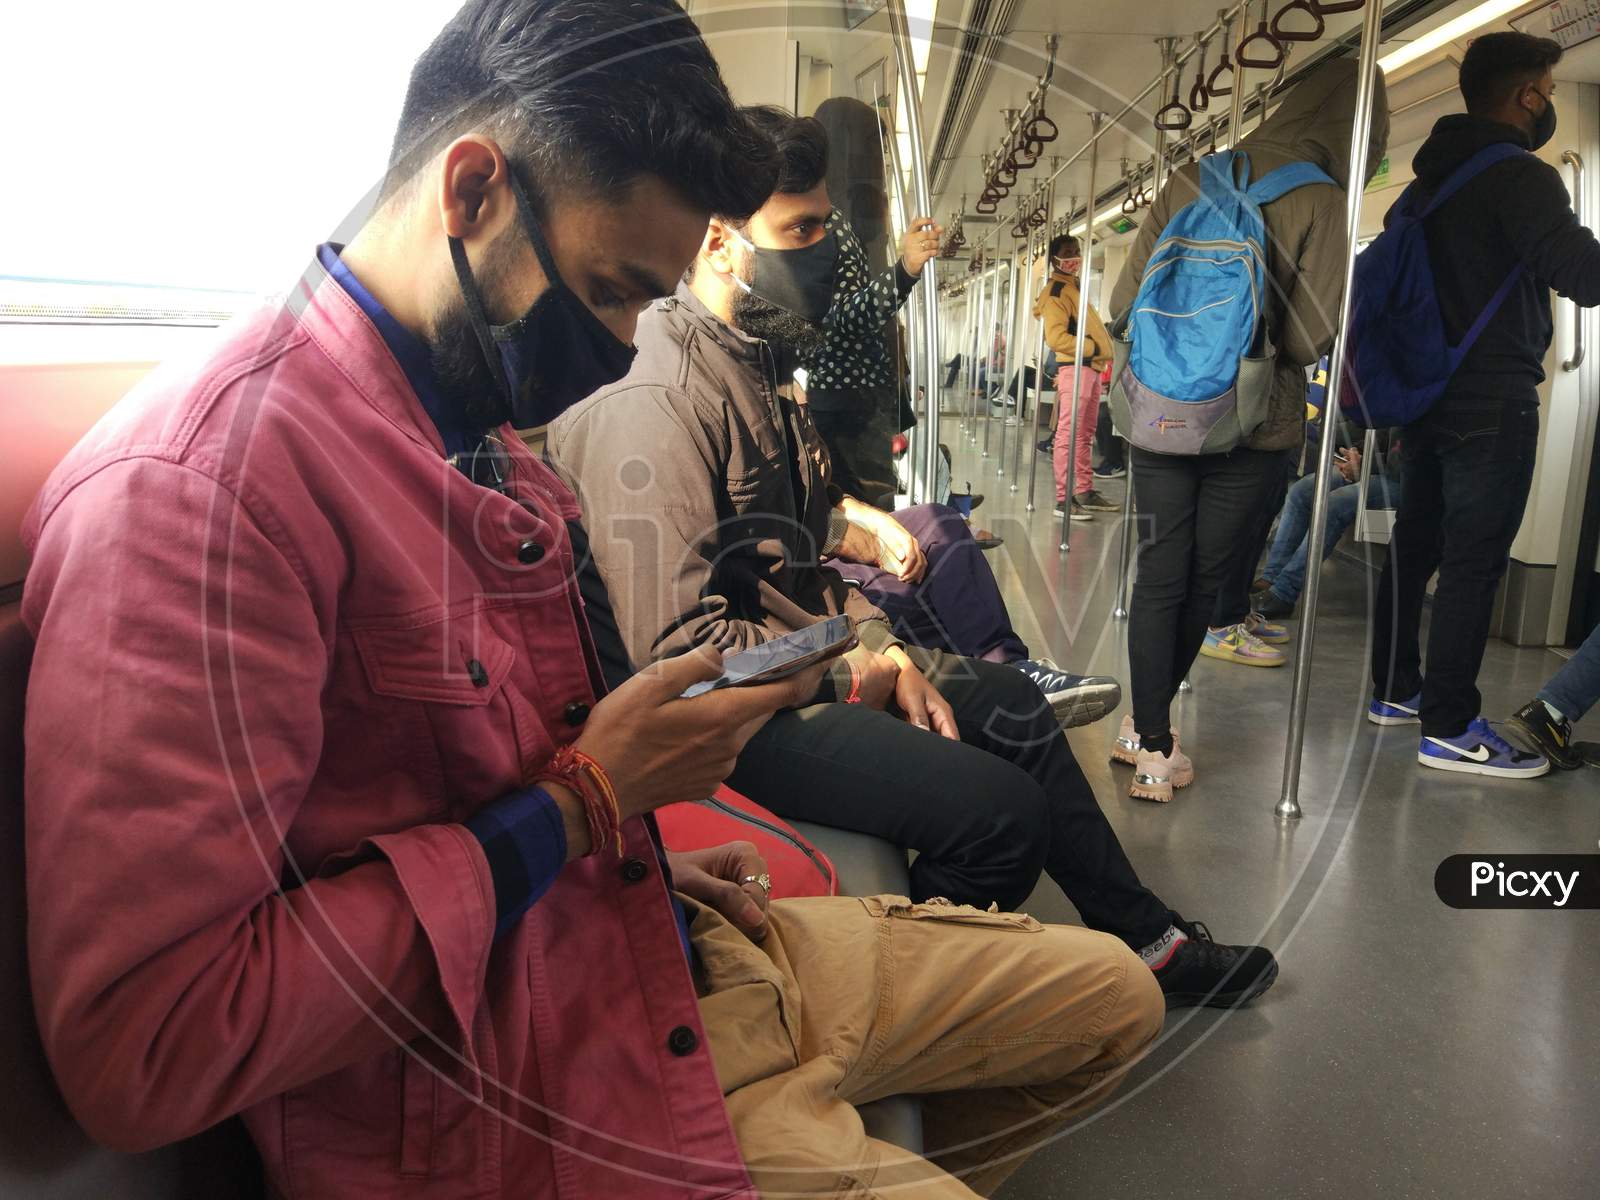 Delhi metro social distancing